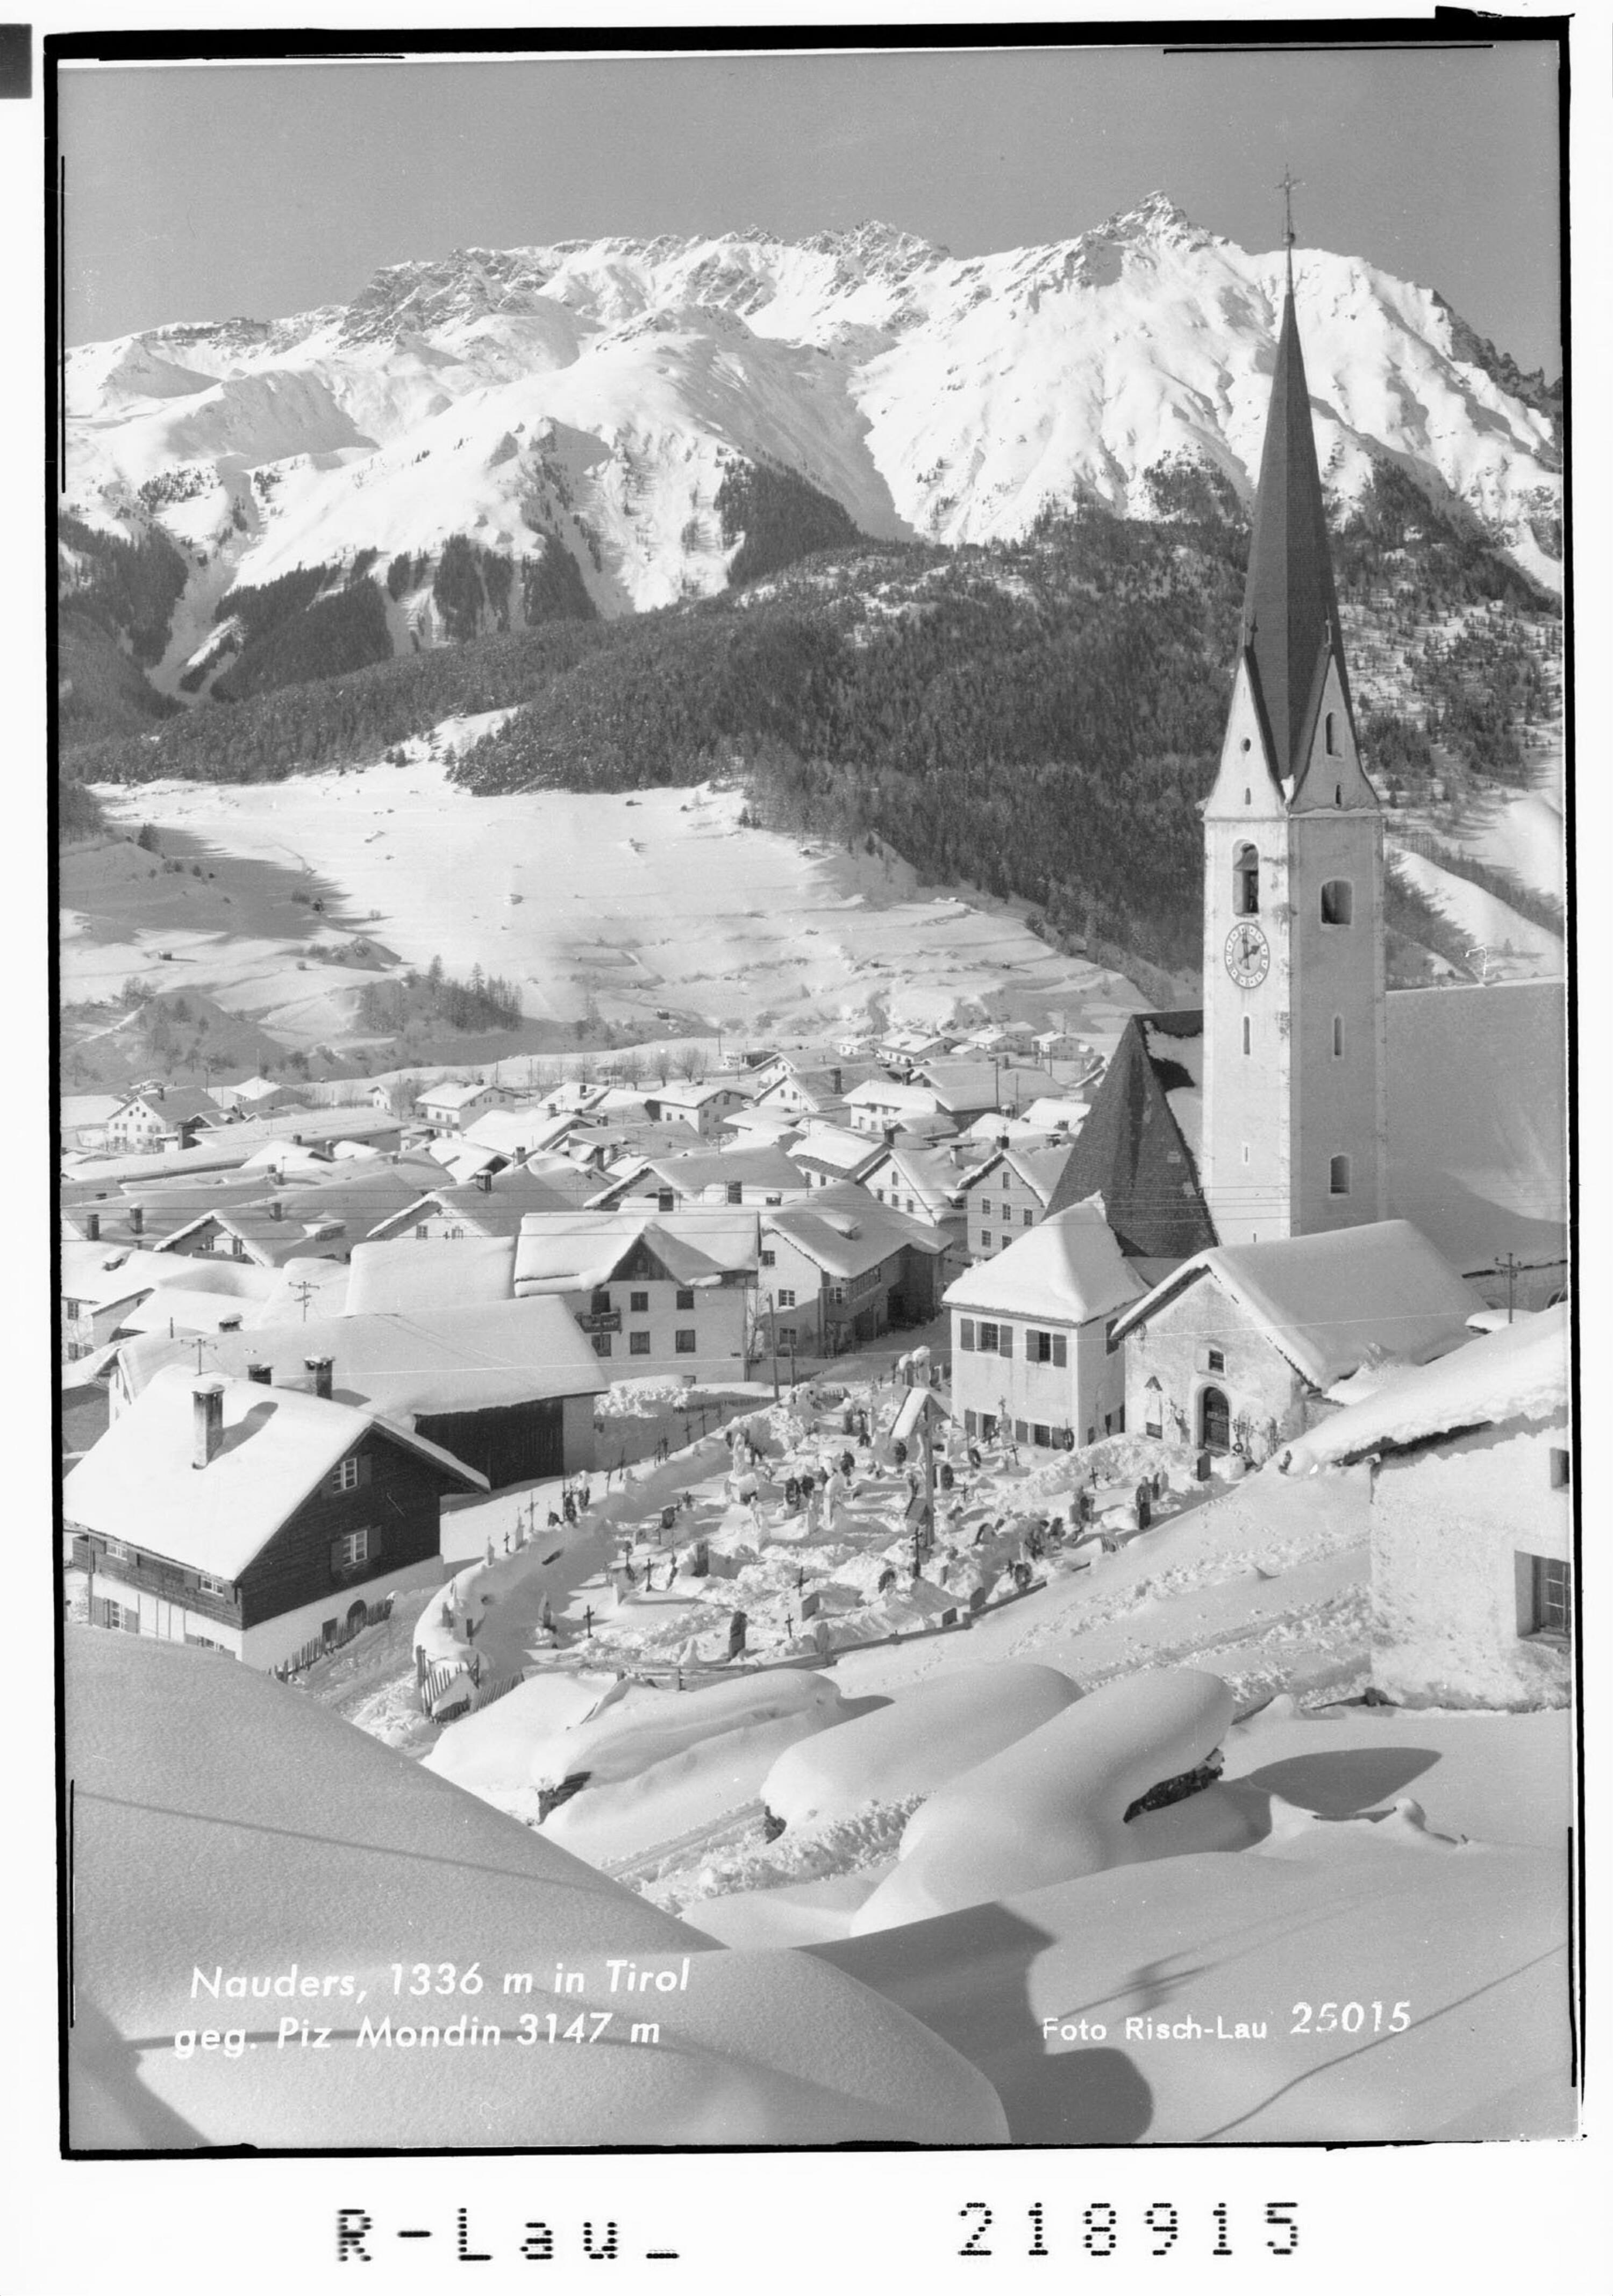 Nauders 1336 m in Tirol gegen Piz Mondin 3147 m></div>


    <hr>
    <div class=